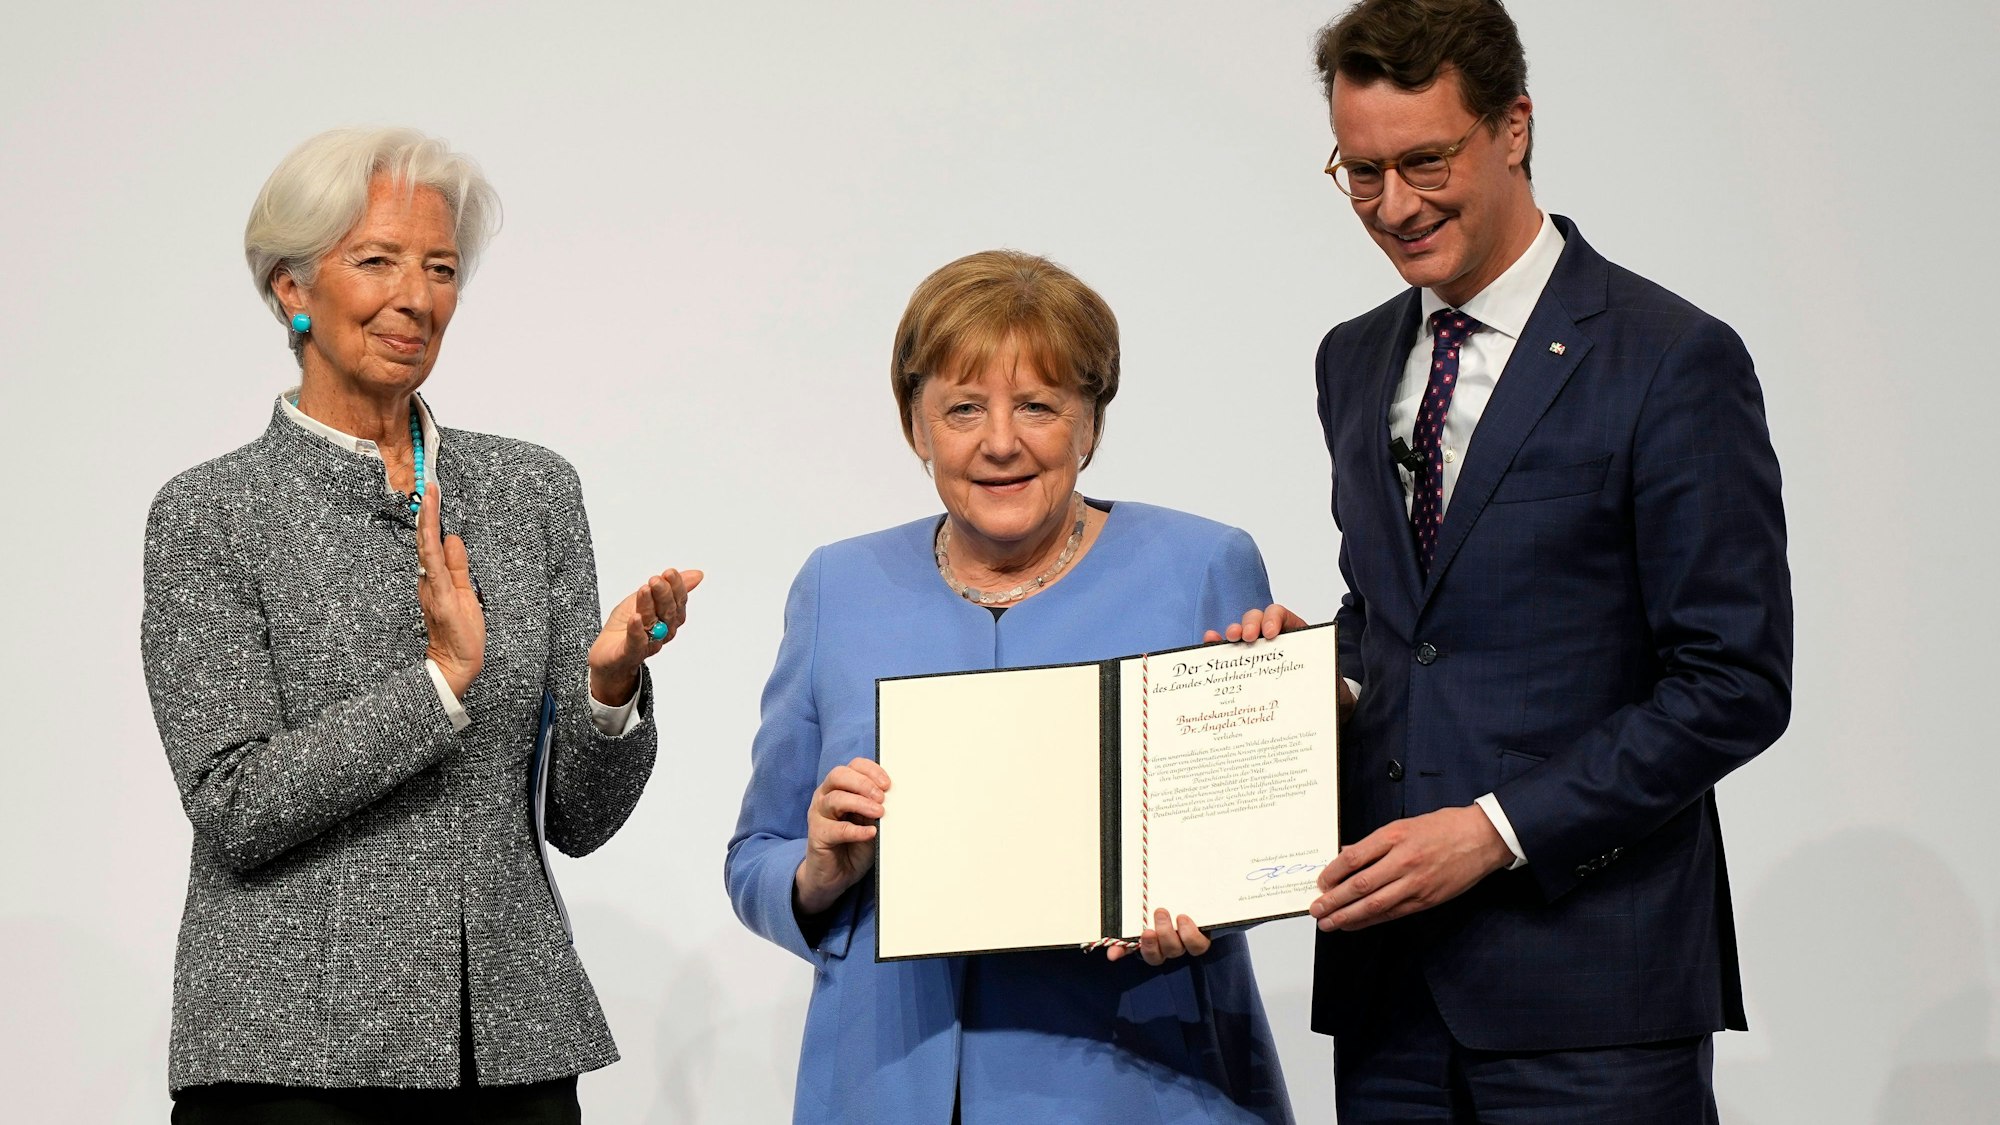 Die frühere Kanzlerin Angela Merkel (Mitte) neben Hendrik Wüst, Ministerpräsident von Nordrhein-Westfahlen (rechts) und Christine Lagarde, Präsidentin der Europäischen Zentralbank (links)